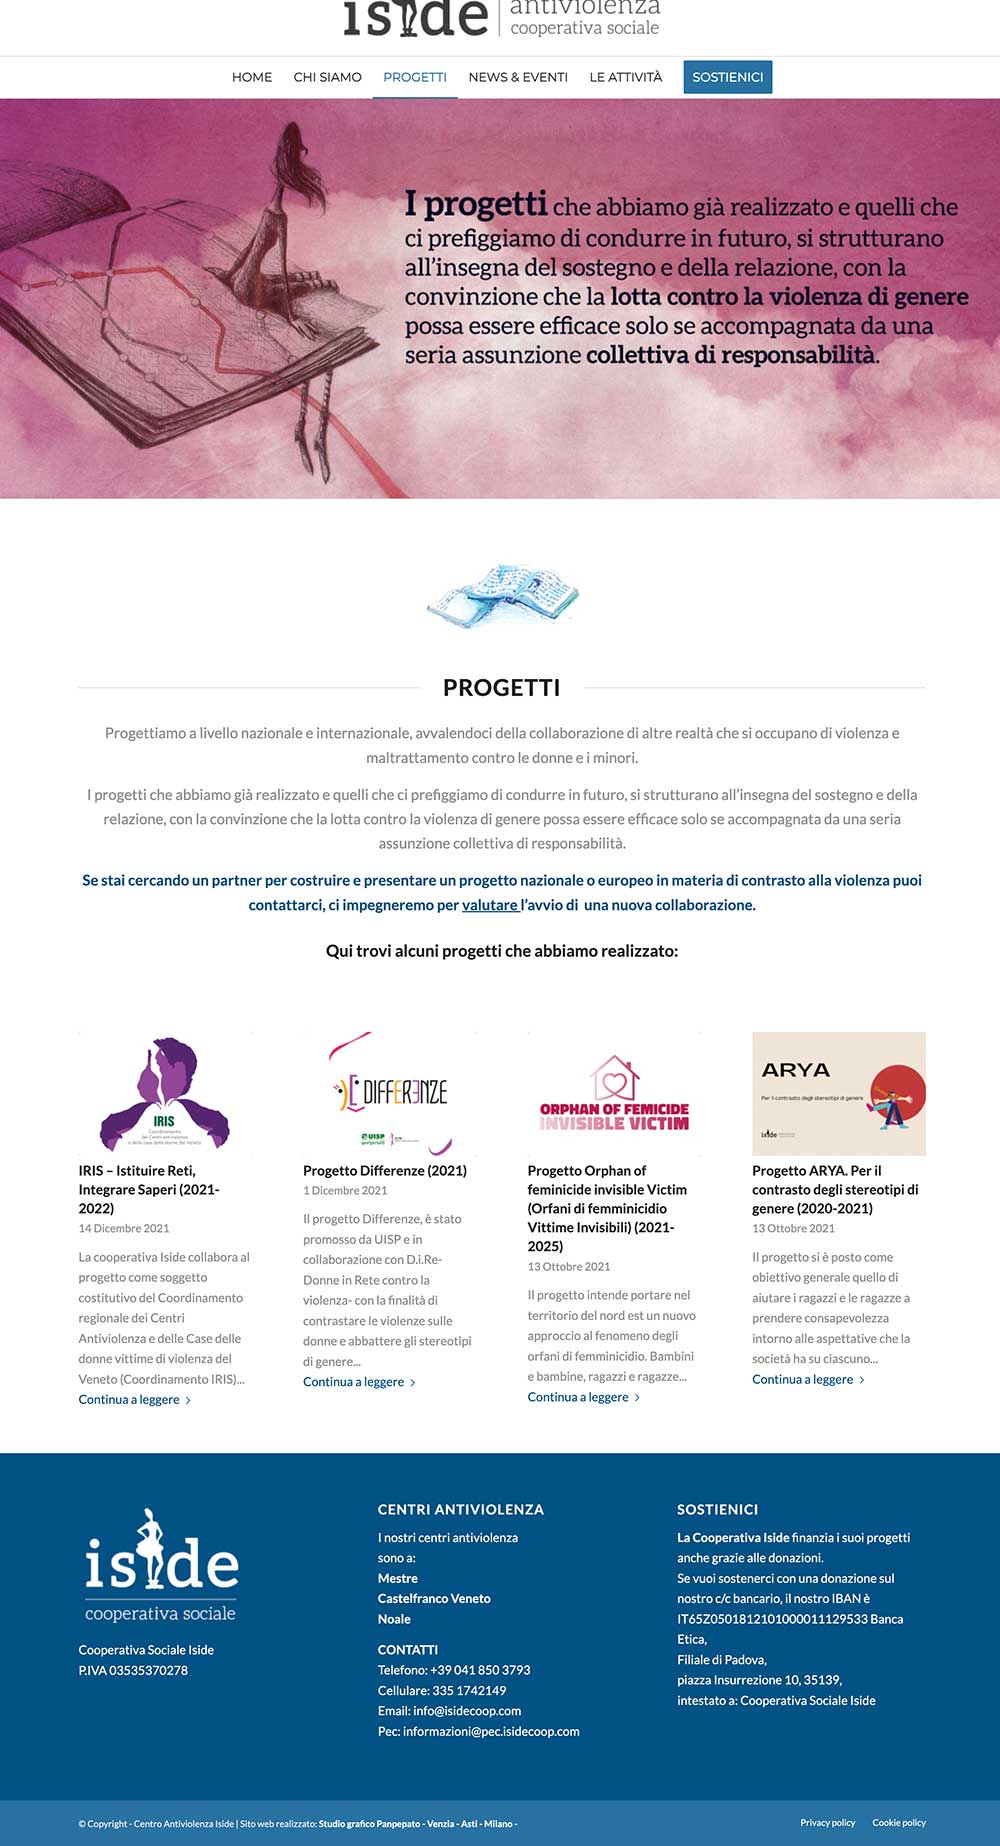 Progetto di sito web e materiali coordinati di comunicazione – Iside Antiviolenza